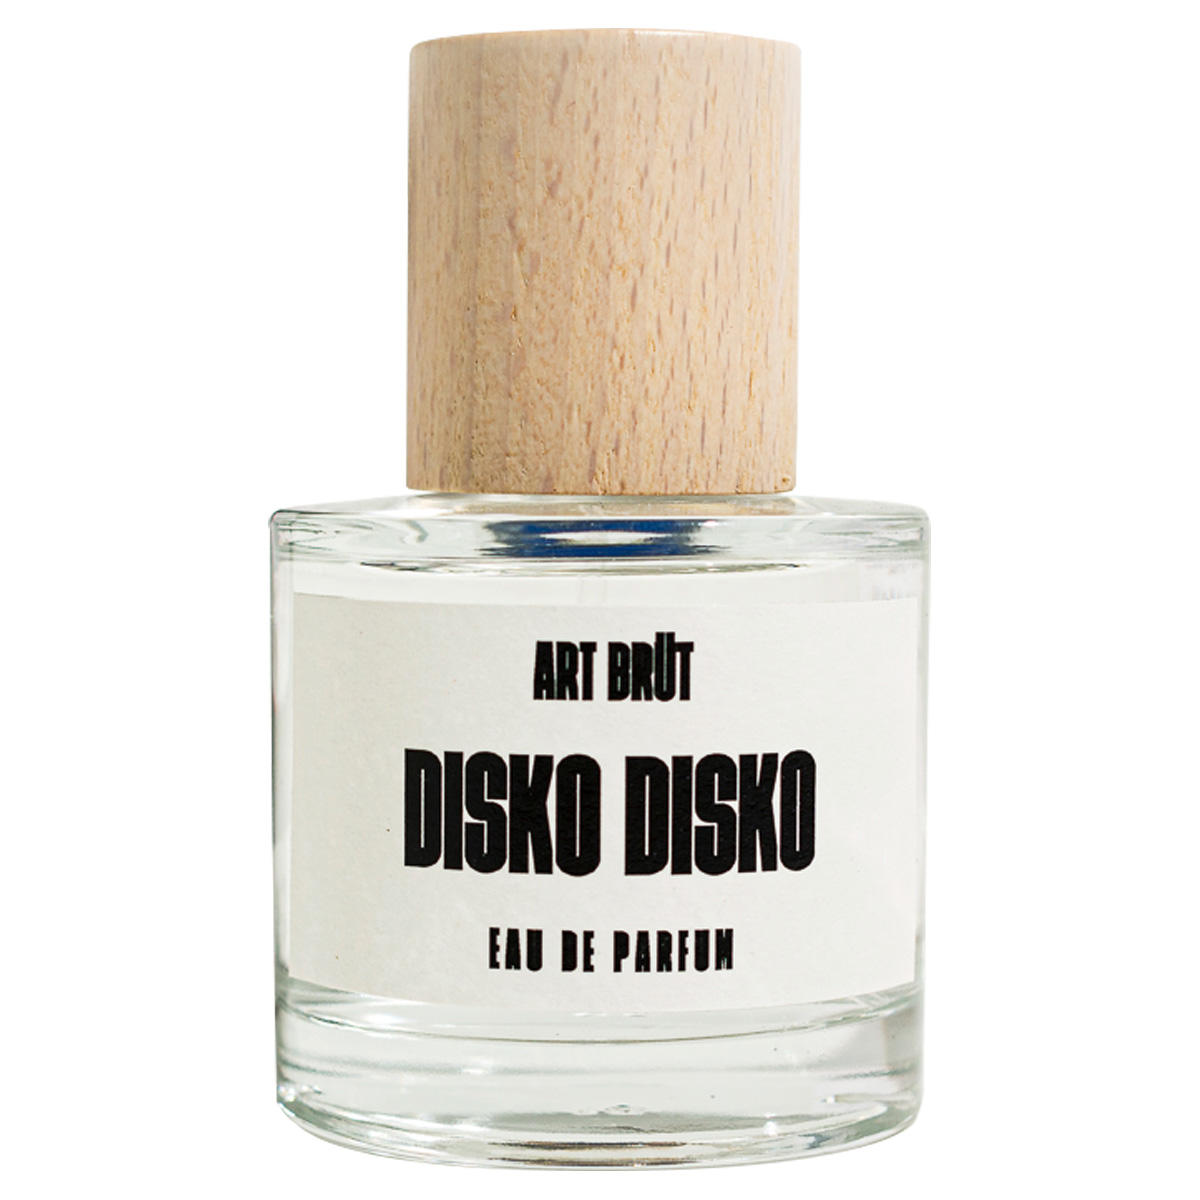 ART BRÜT DISKO DISKO Eau de Parfum 50 ml - 1